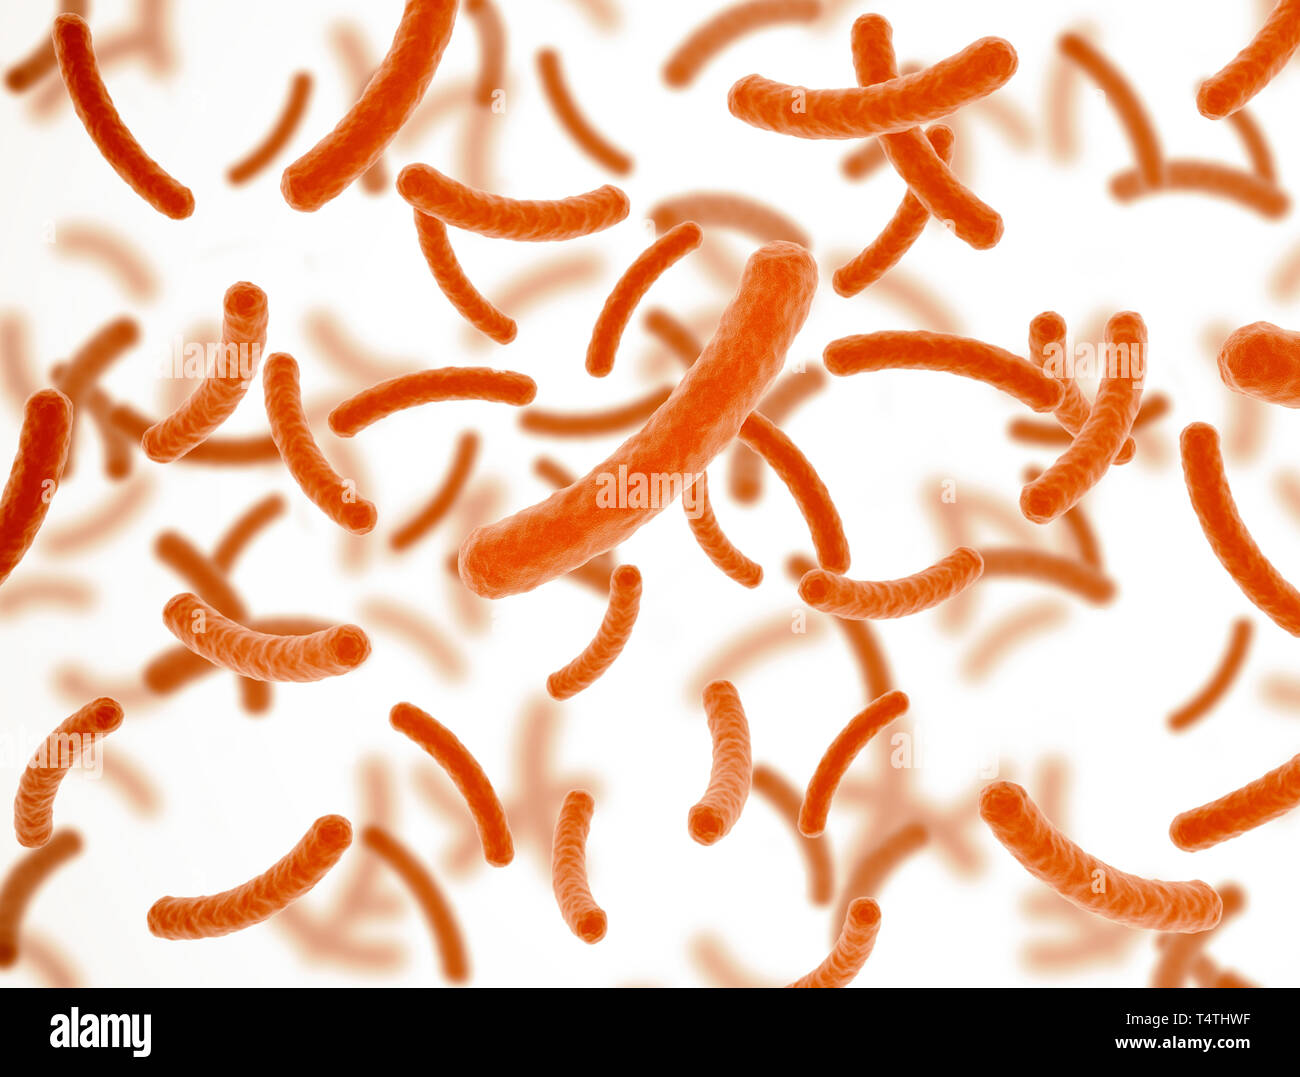 Les cellules des bactéries orange sur fond blanc avec la profondeur de champ Banque D'Images